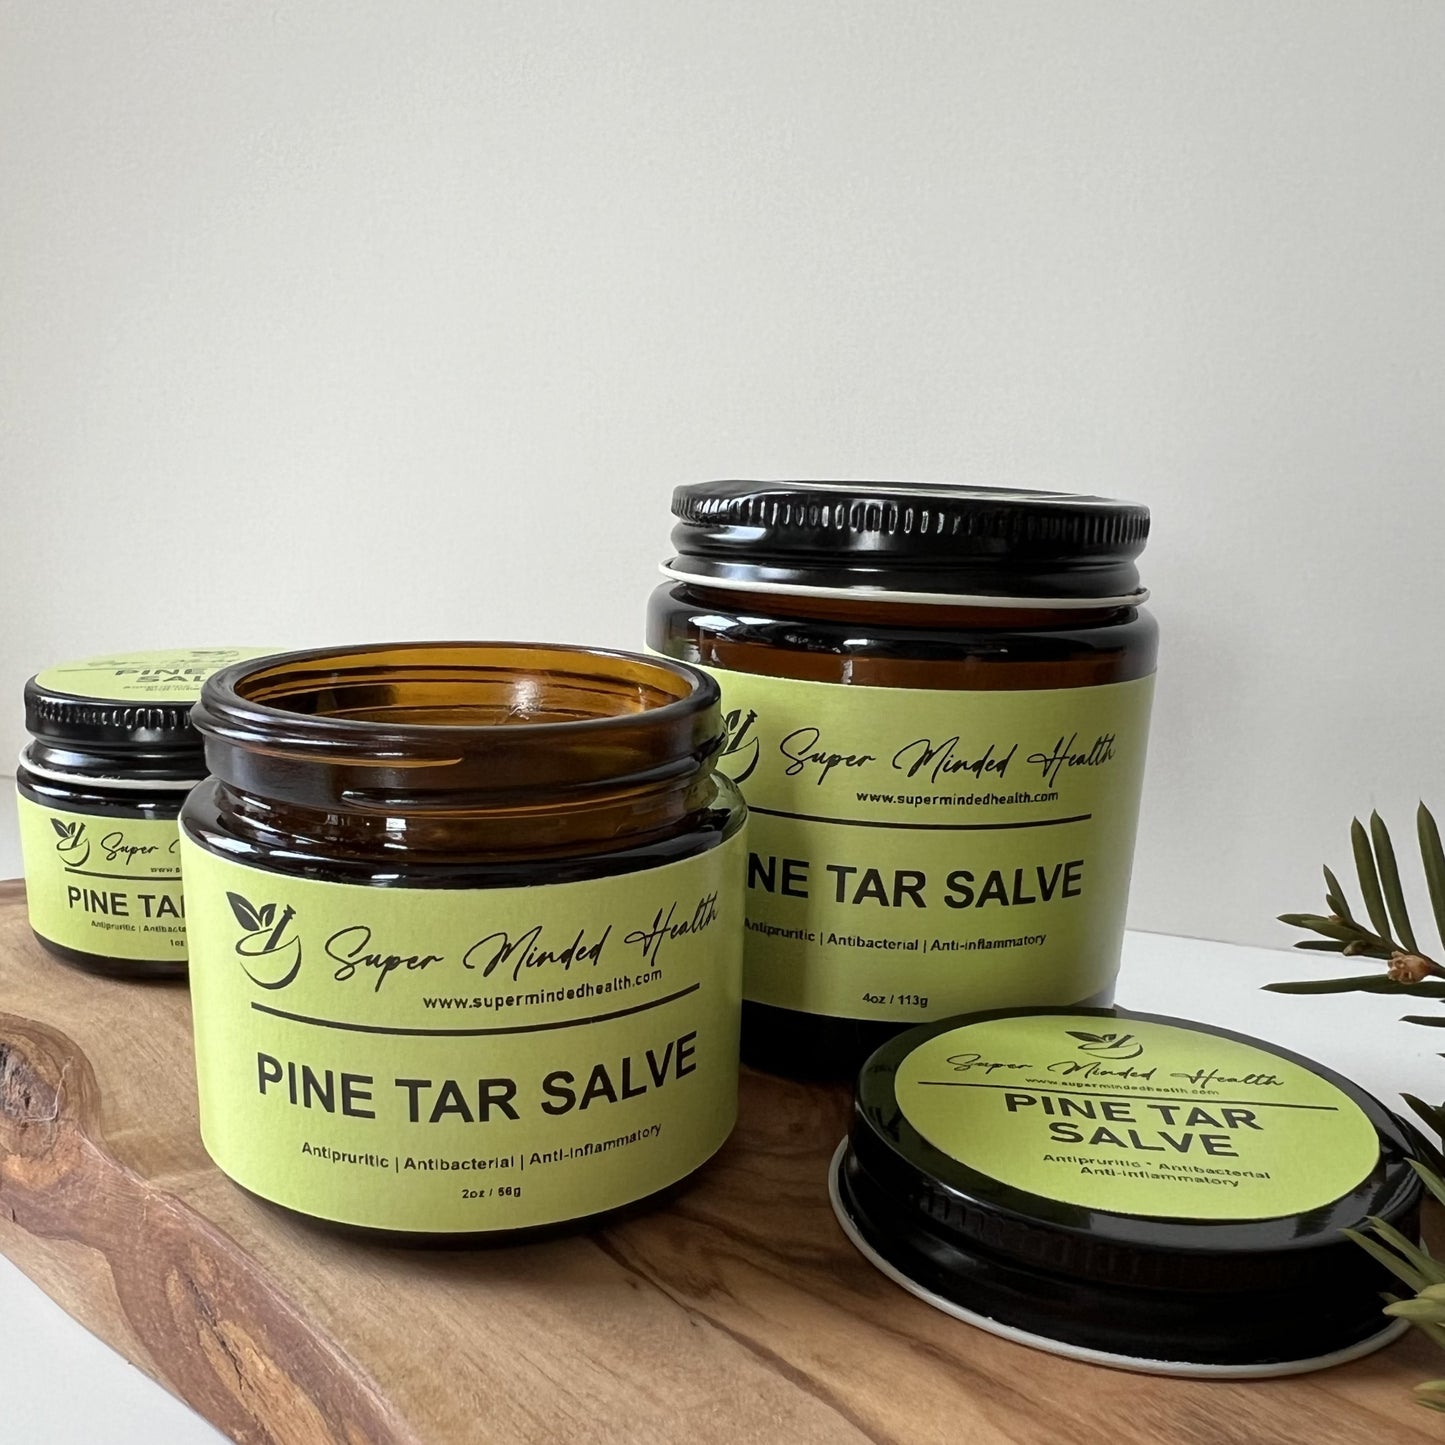 Pine Tar Salve | Skin Rash | Psoriasis | Eczema | Itchy Skin | All Natural Herbal Salve